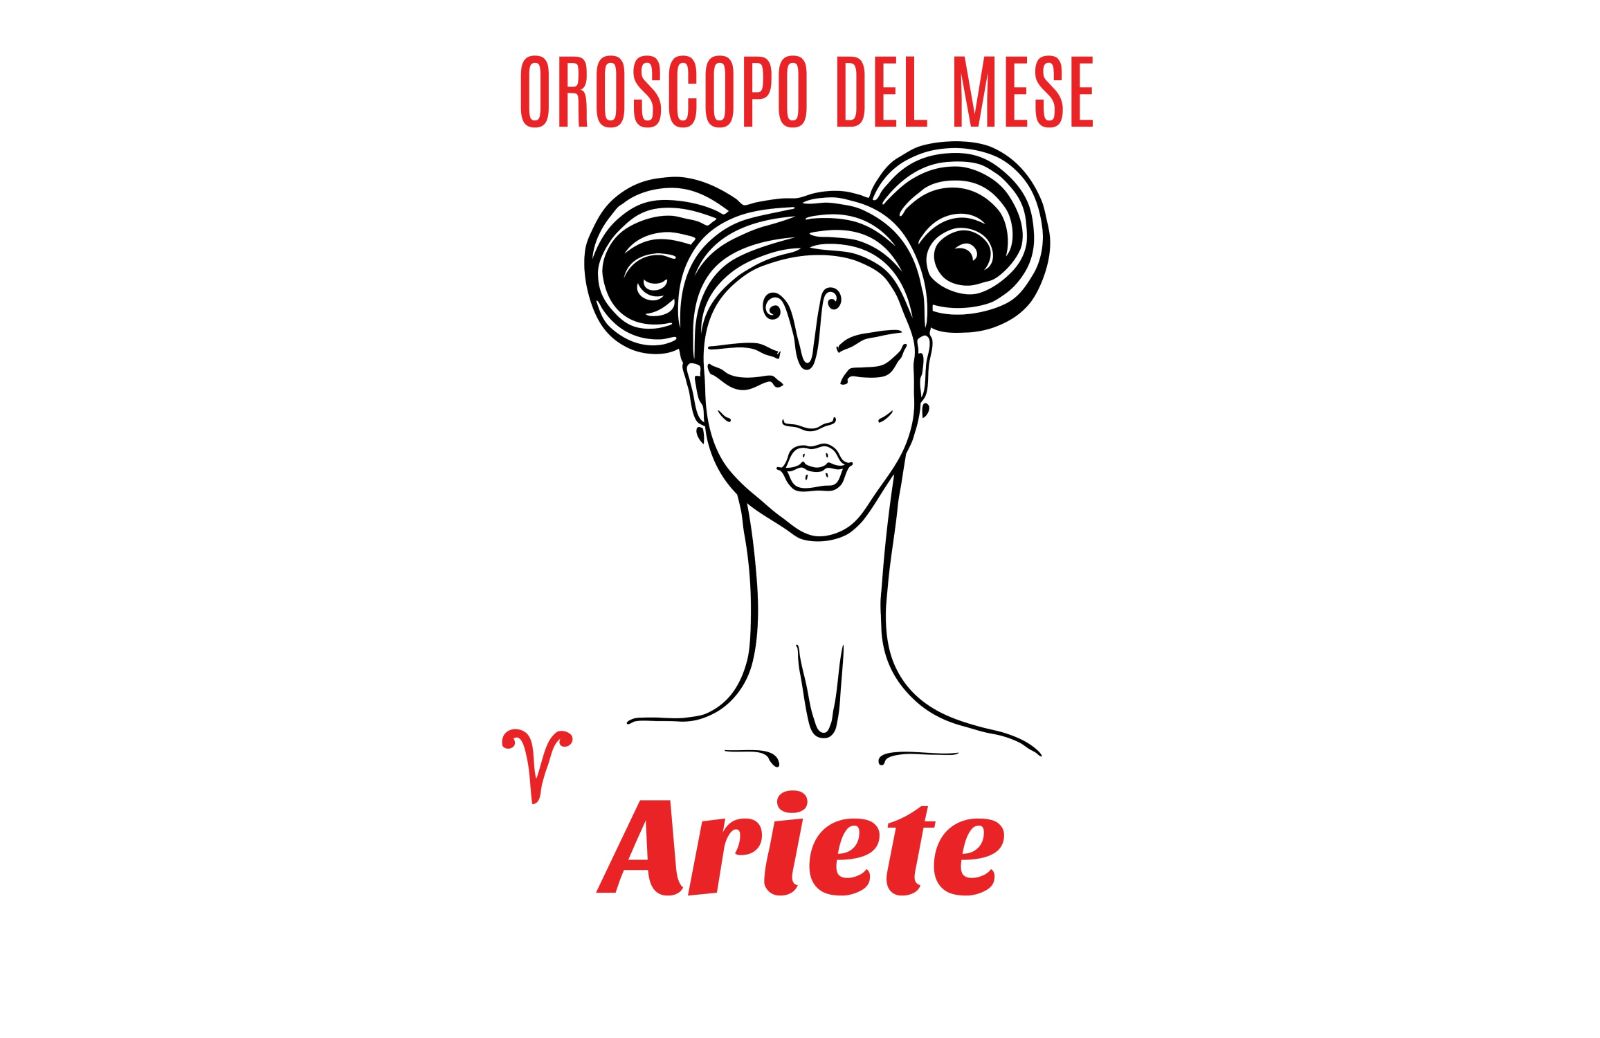 Oroscopo del mese - Ariete: luglio 2019